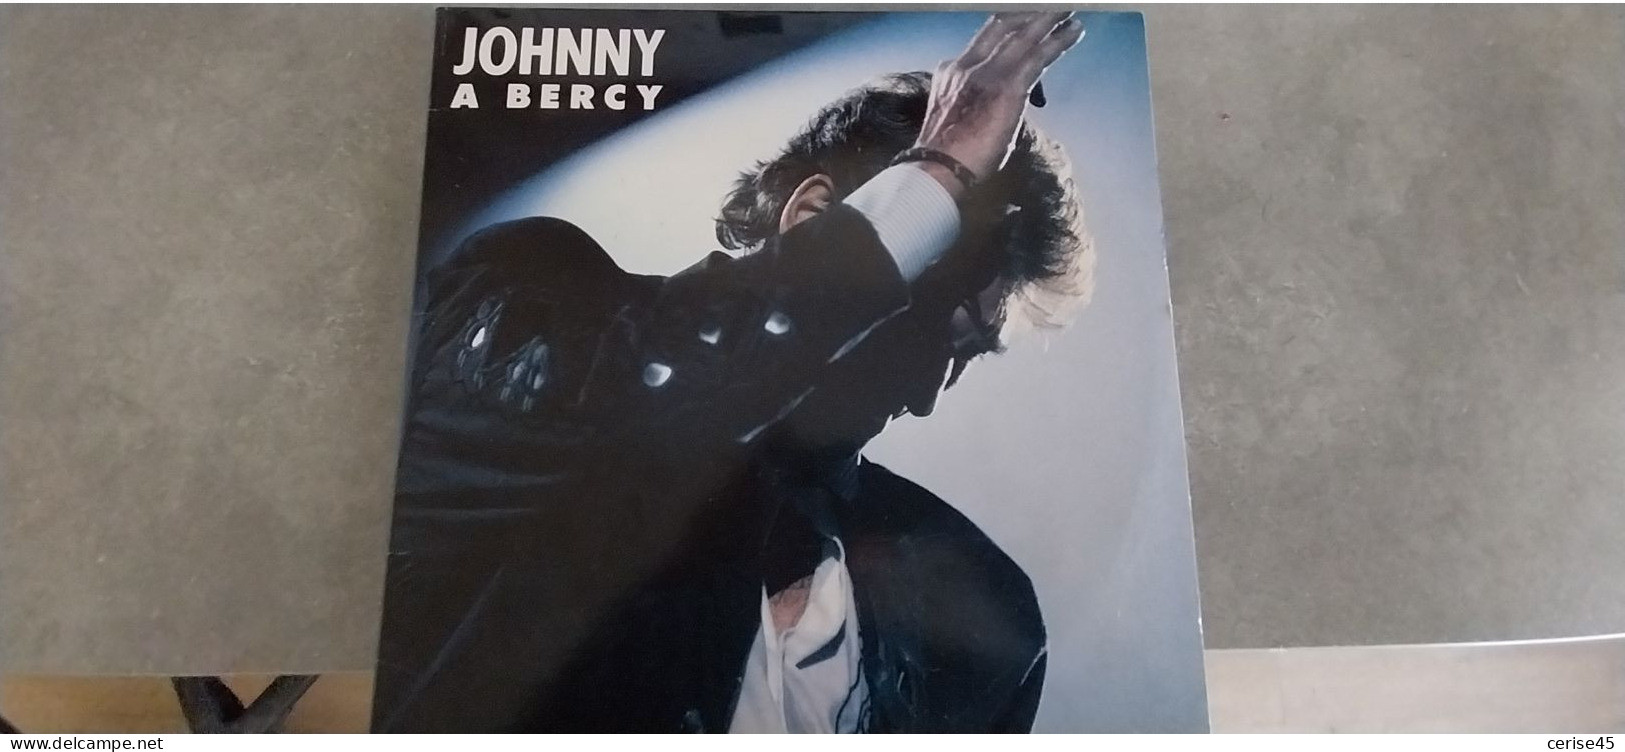 Johnny Hallyday  A BERCY...double 33Tours ..1988 - Autres - Musique Française